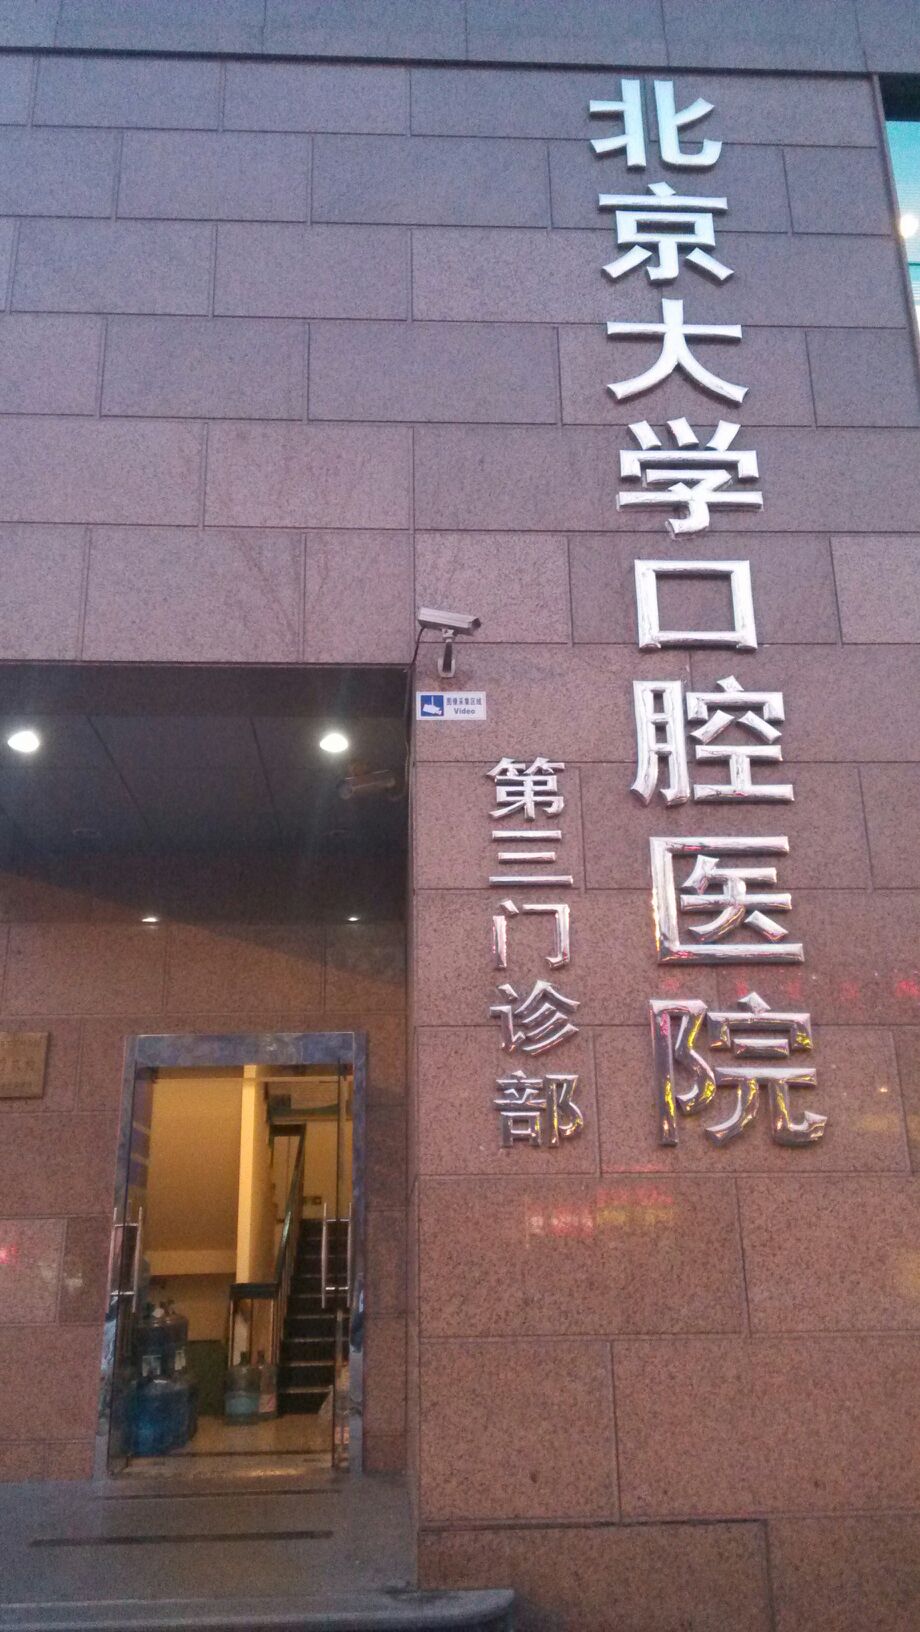 北京大学口腔医院在哪挂号	北京大学口腔医院在哪挂号预约